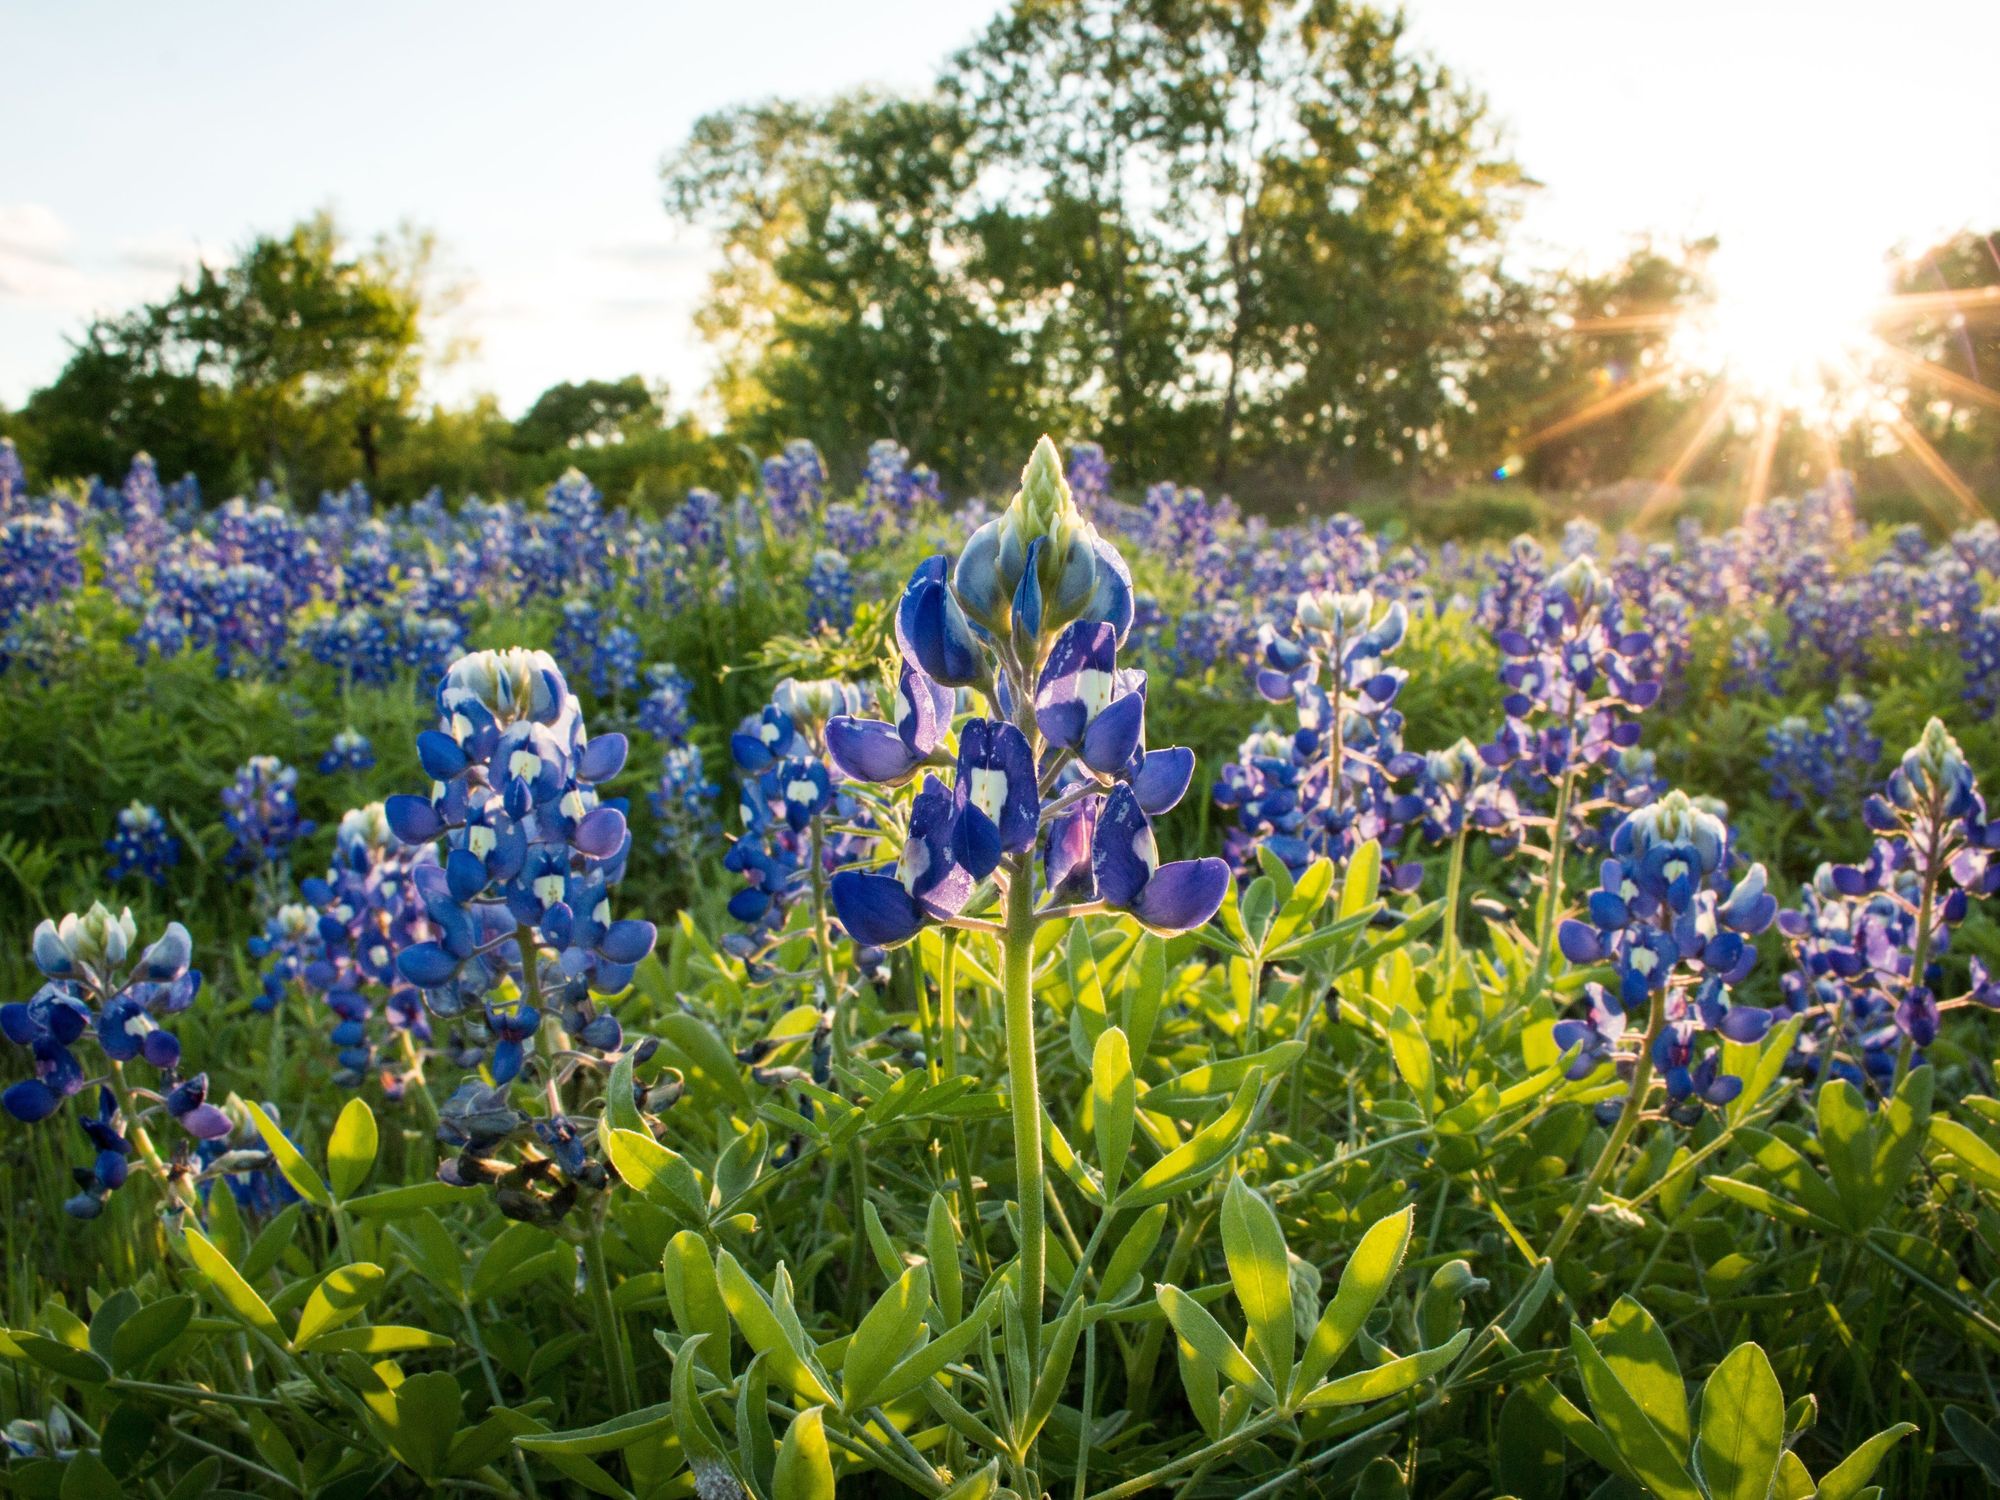 A field of bluebonnets in the sunlight